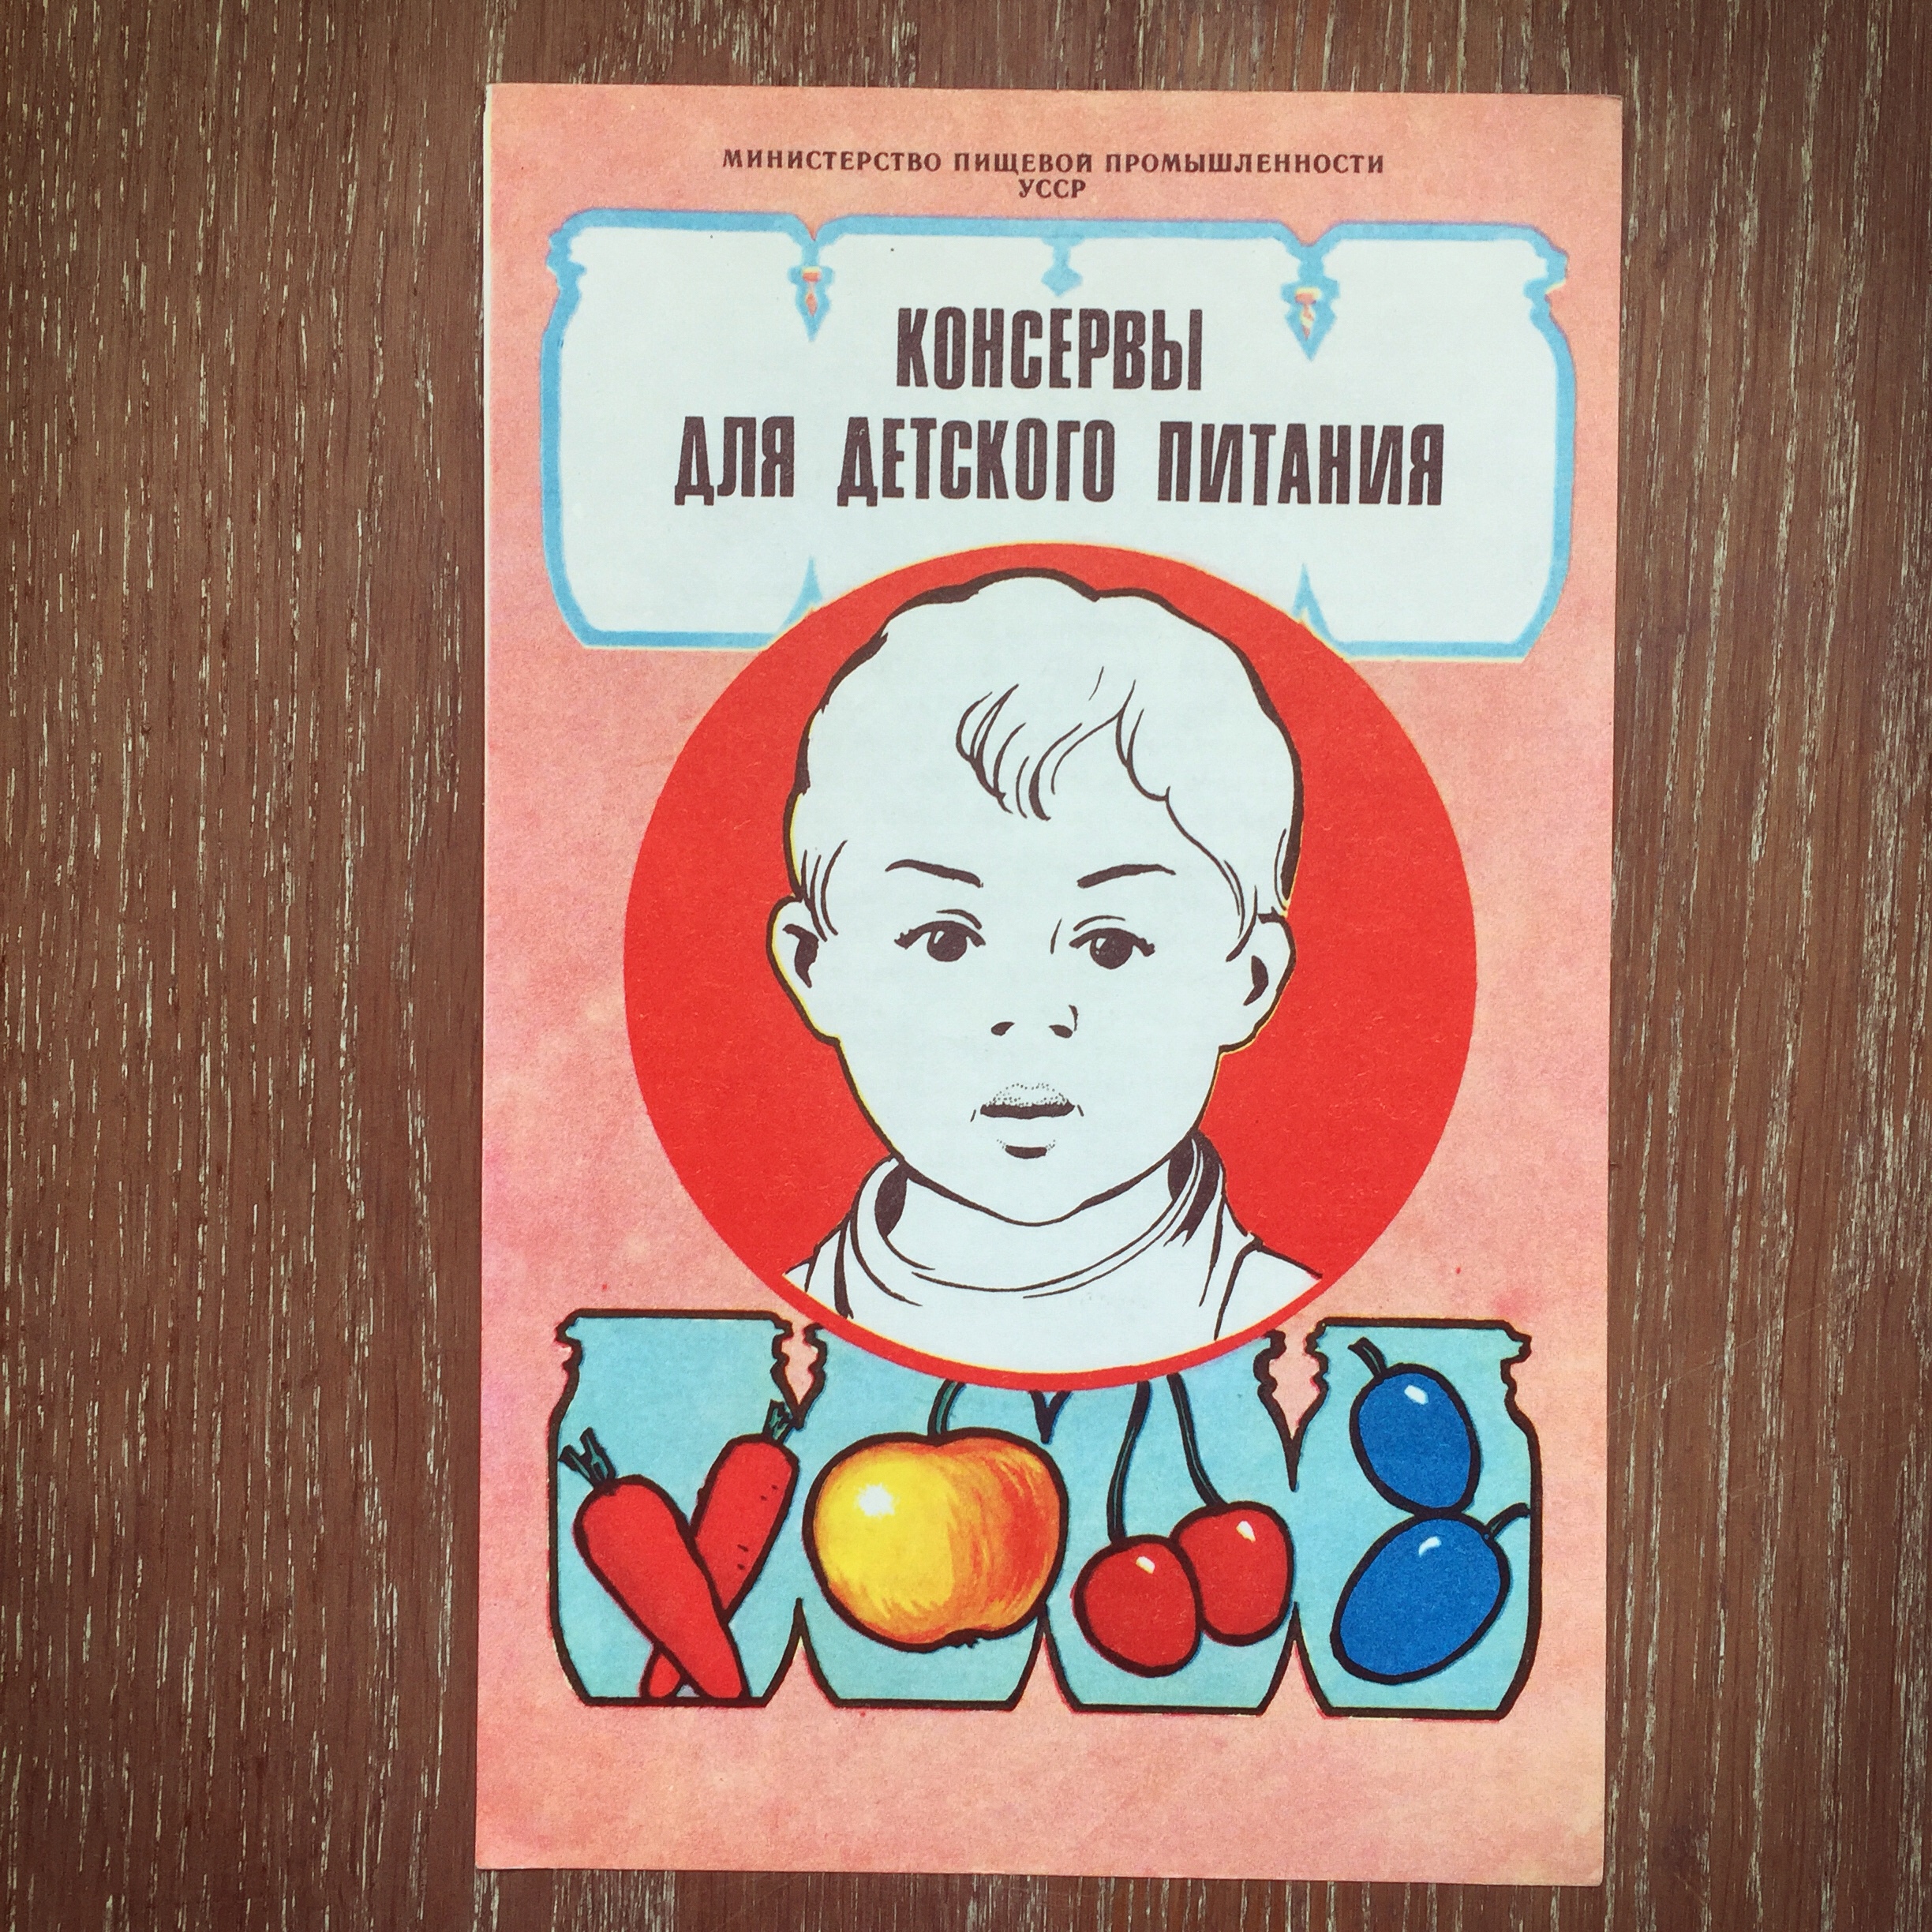 Sowjetunion Siebzigerjahre Konserven für Kinder